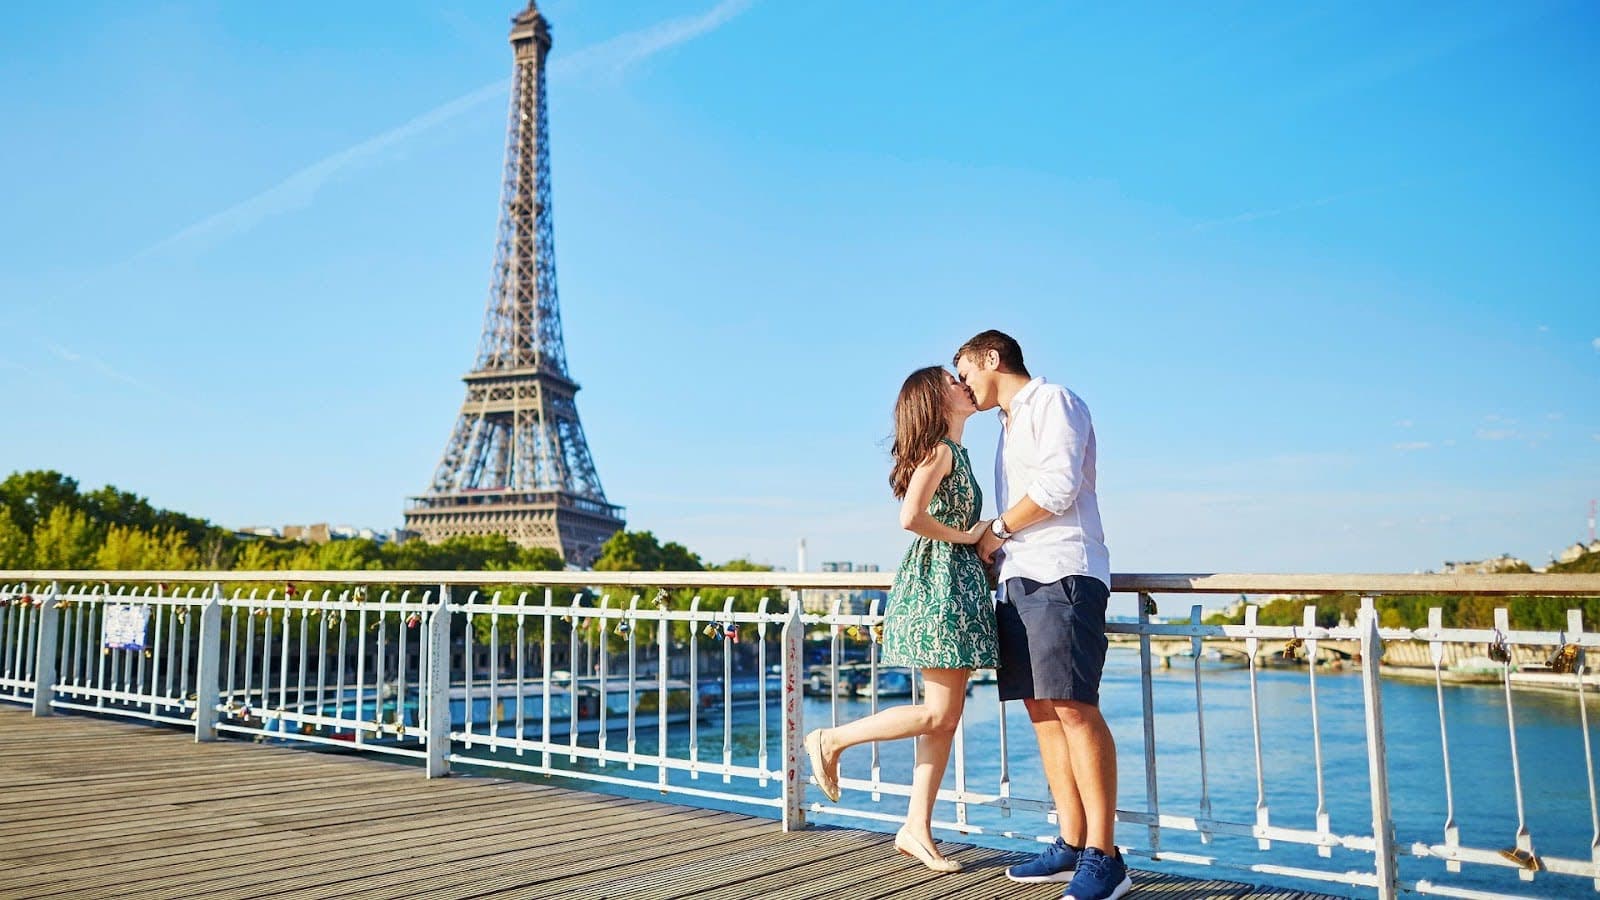 Best Vacation Spots for Couples - Paris